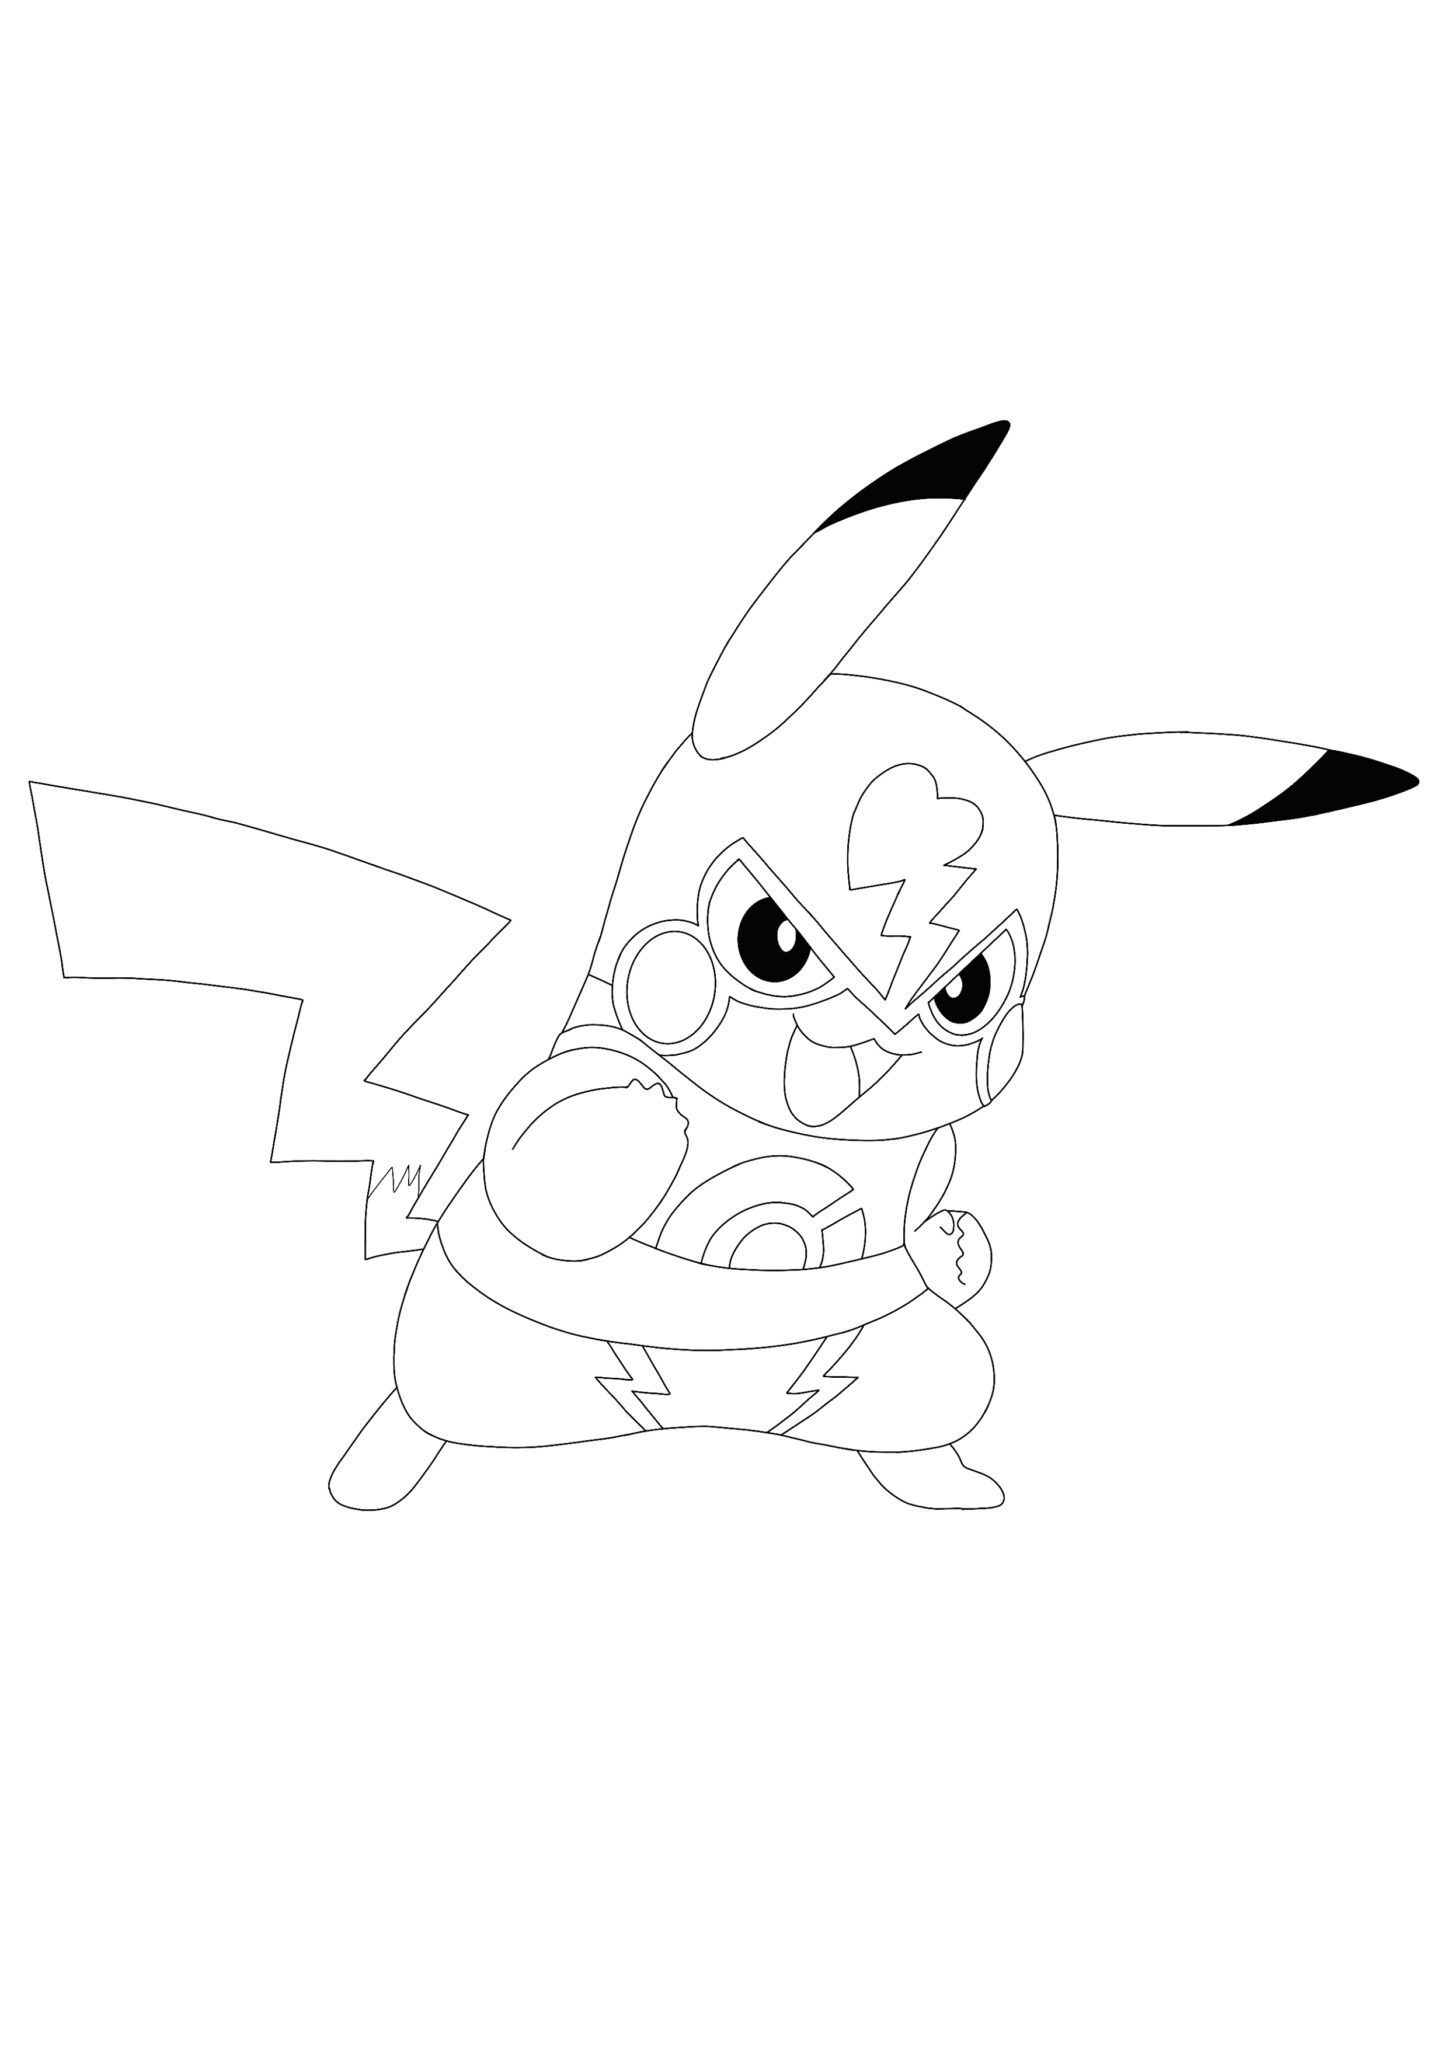 Stitch and pikachu #2